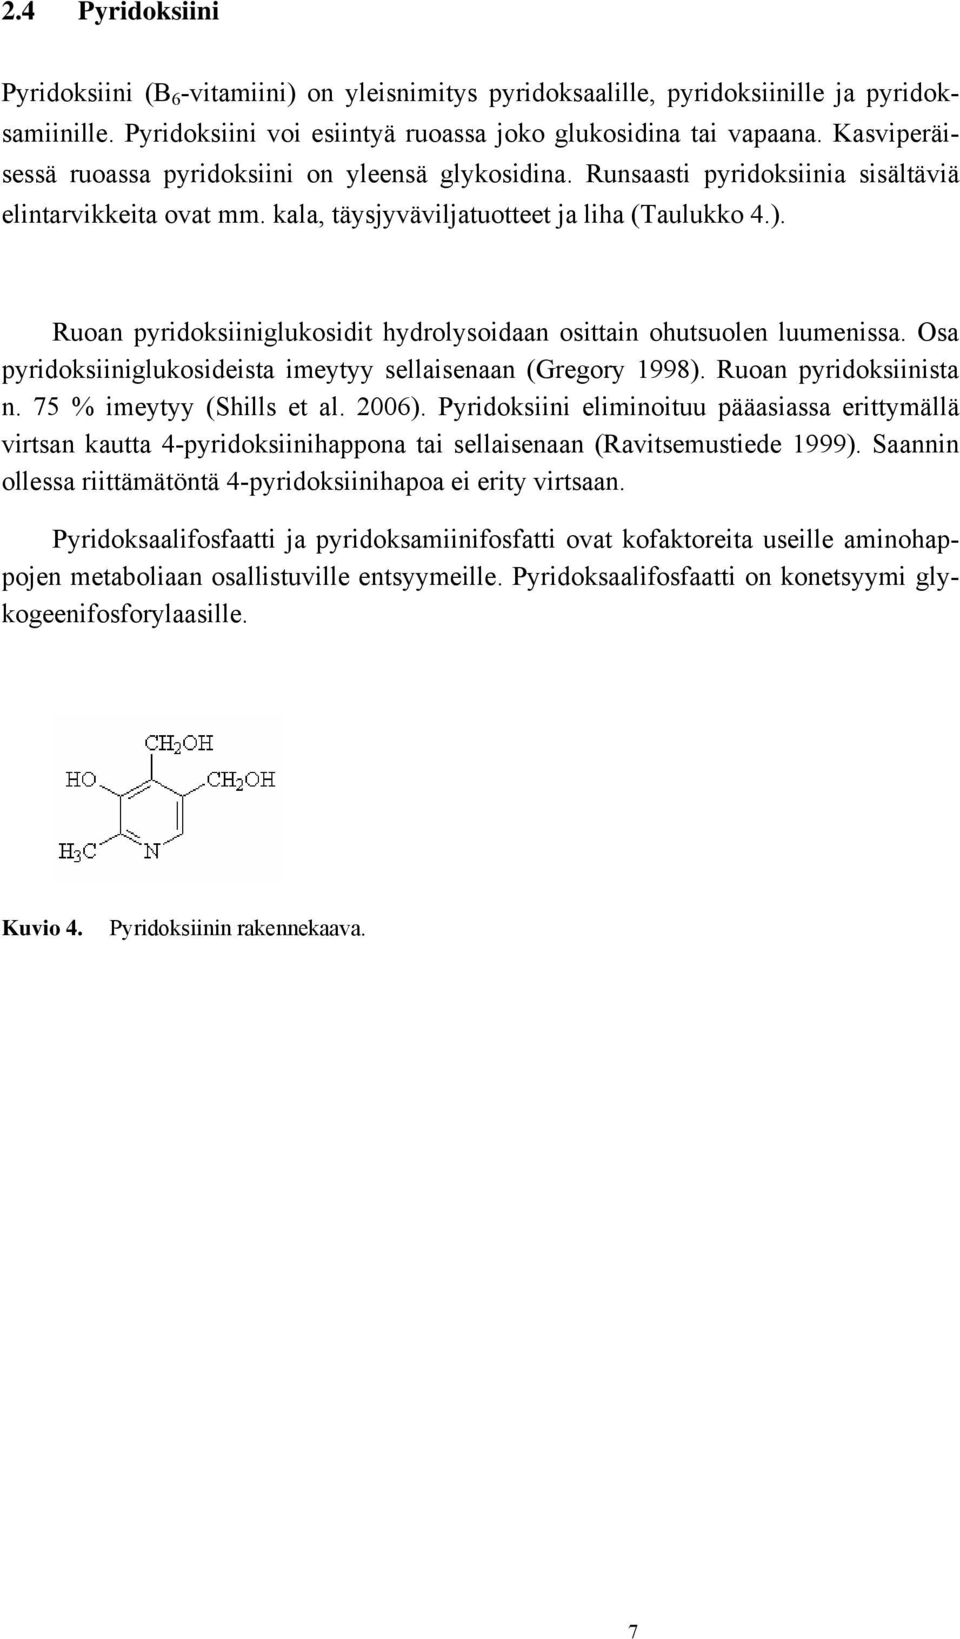 Ruoan pyridoksiiniglukosidit hydrolysoidaan osittain ohutsuolen luumenissa. Osa pyridoksiiniglukosideista imeytyy sellaisenaan (Gregory 1998). Ruoan pyridoksiinista n. 75 % imeytyy (Shills et al.